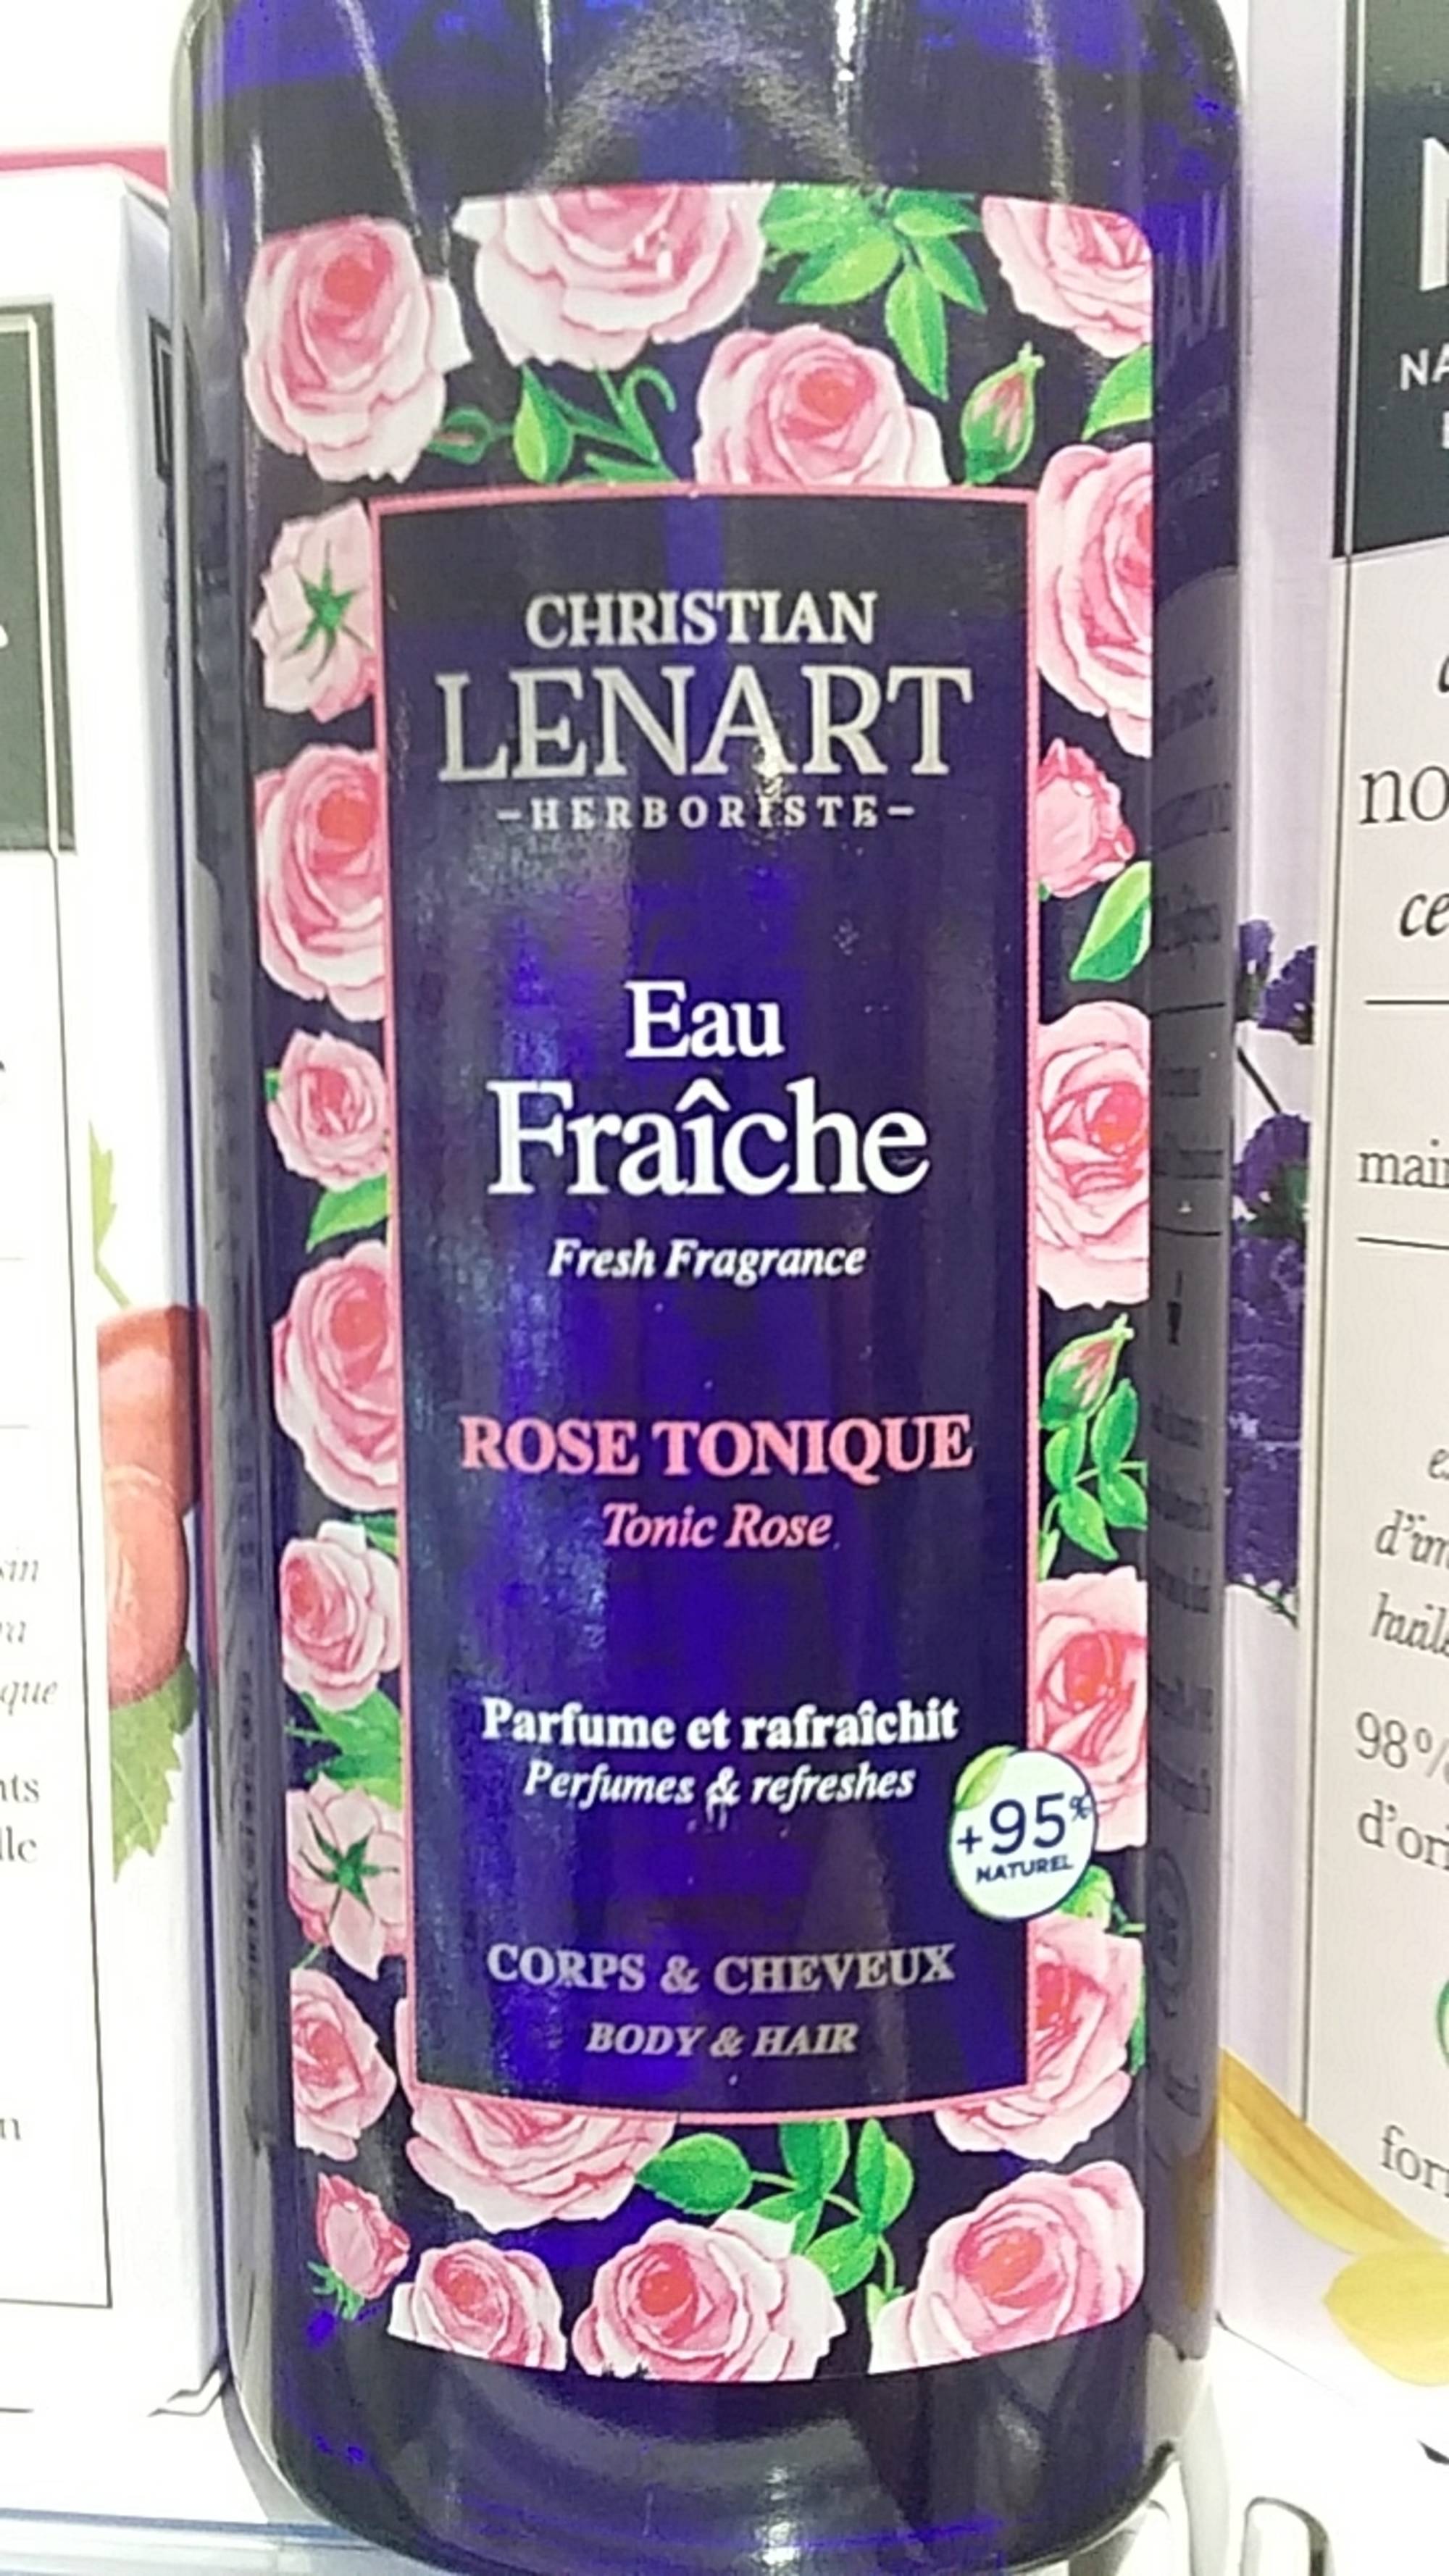 CHRISTIAN LÉNART - Eau fraîche rose tonique